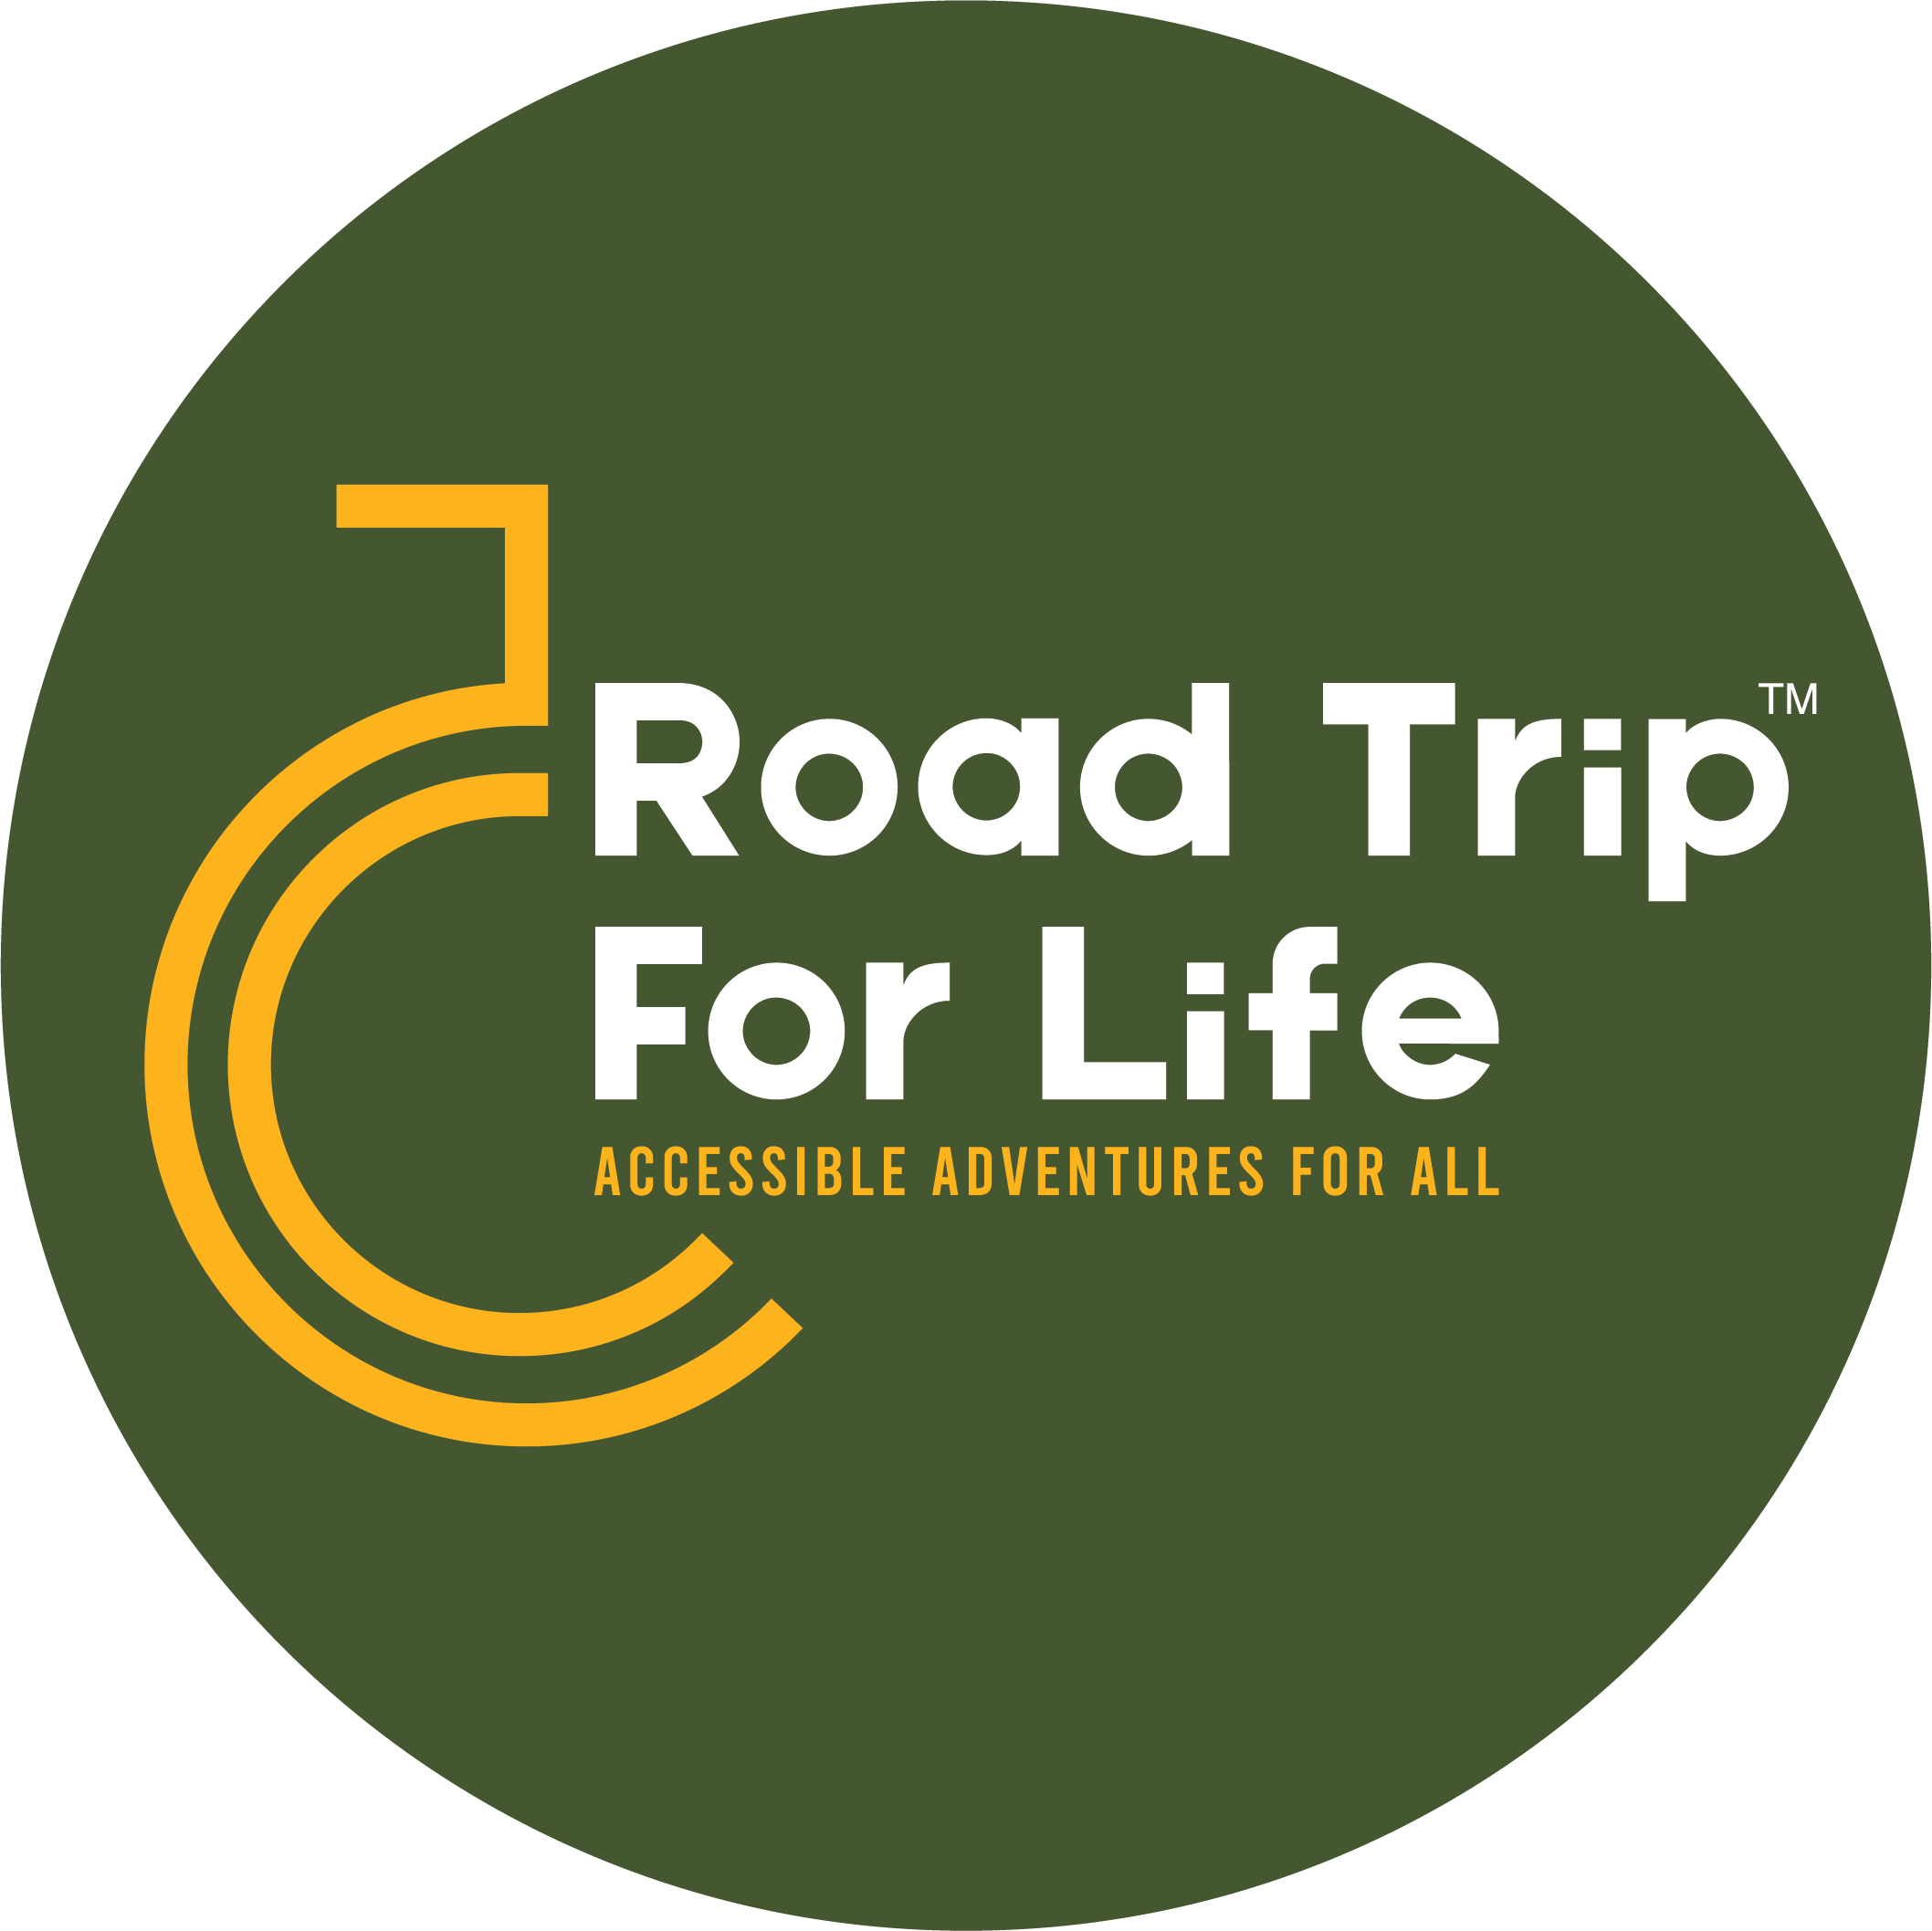 Roadtripforlife foundation logo